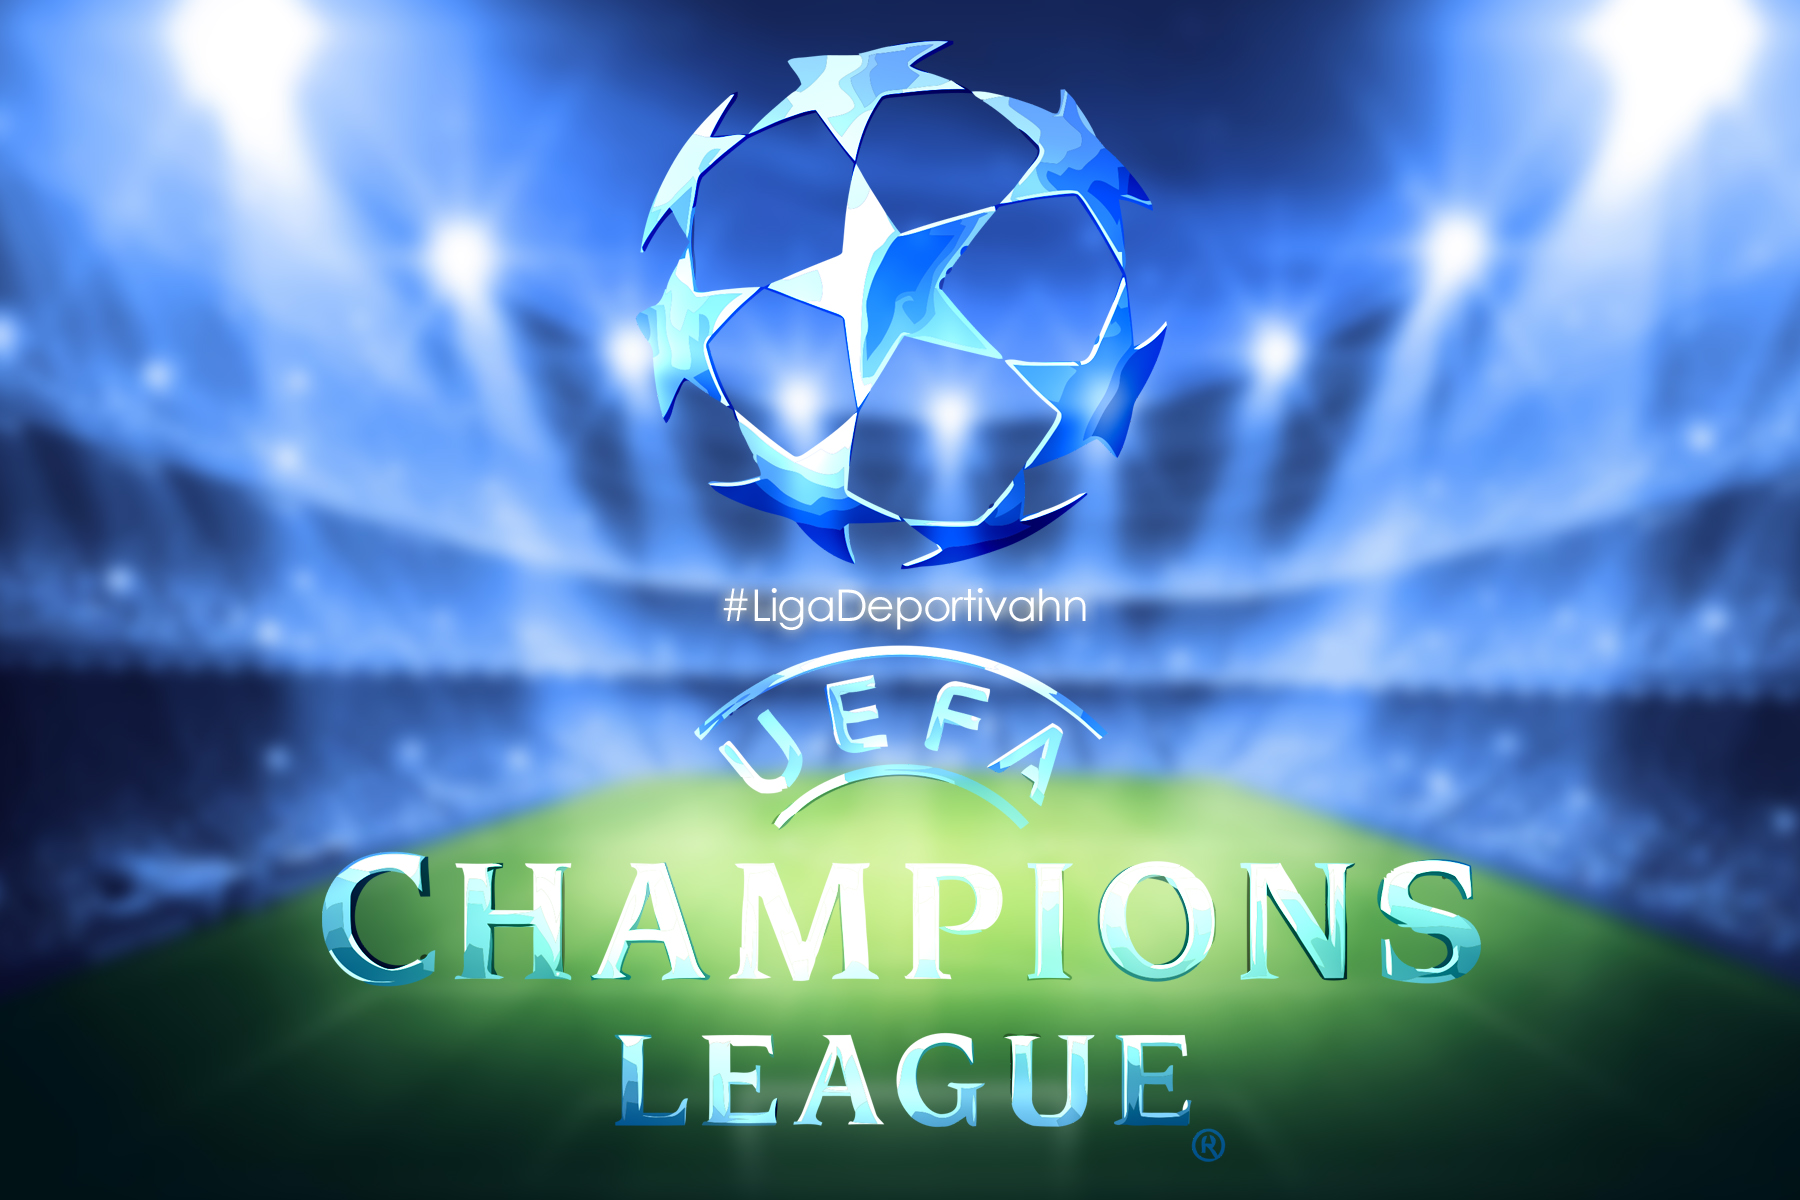 Está semana se definen las semifinales de la Champions League